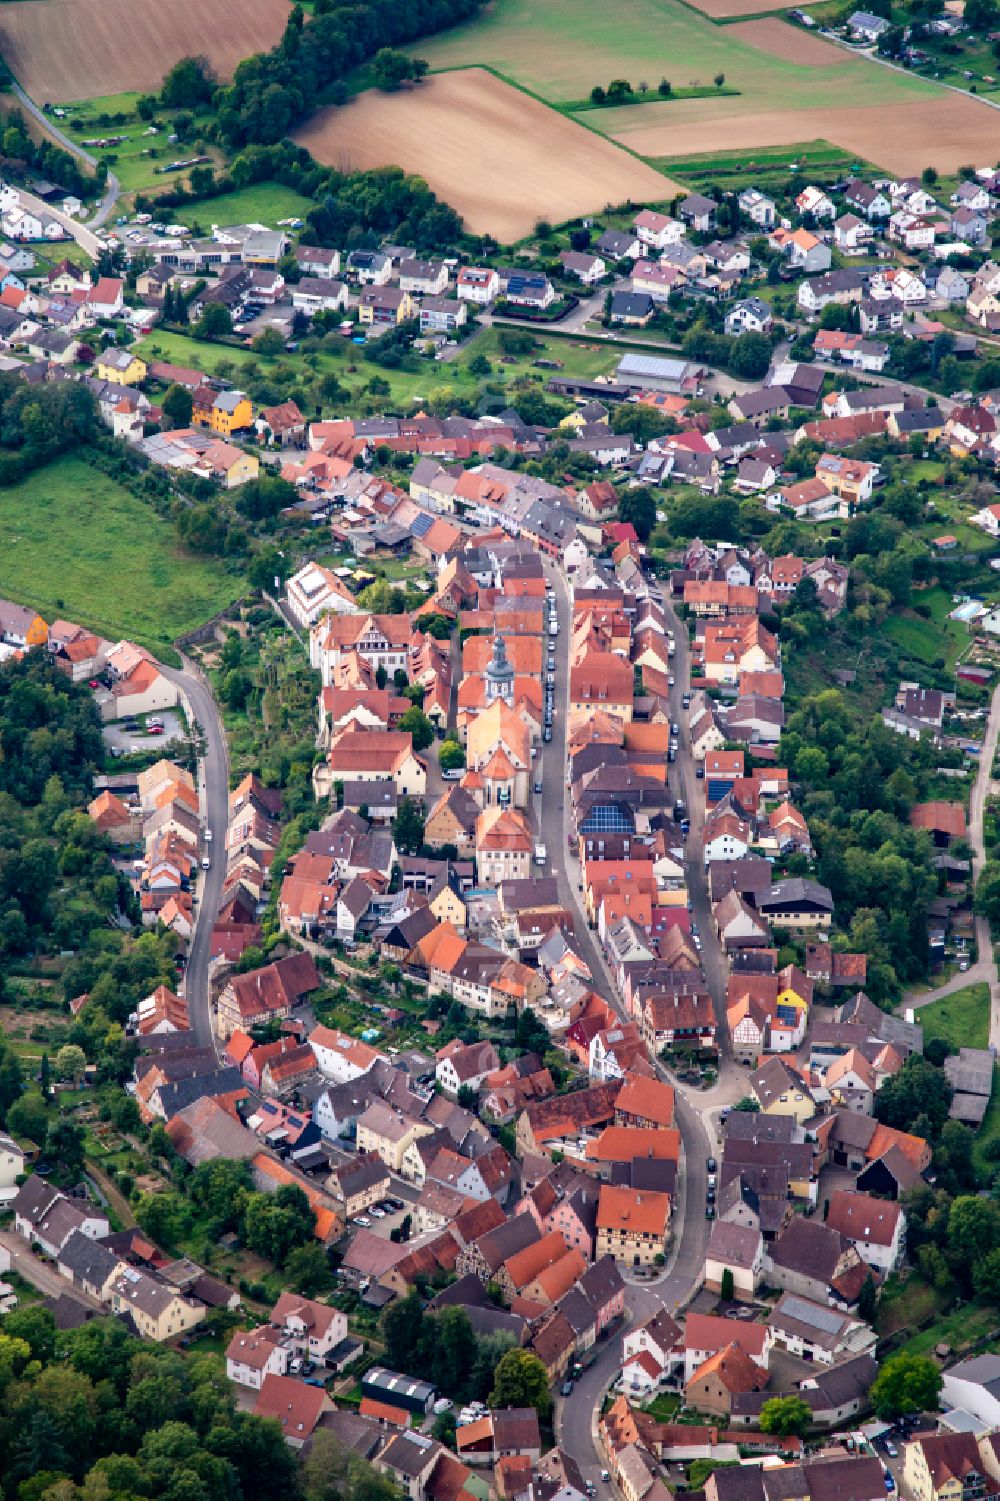 Aerial photograph Kraichtal - Village view in Kraichtal in the state Baden-Wuerttemberg, Germany